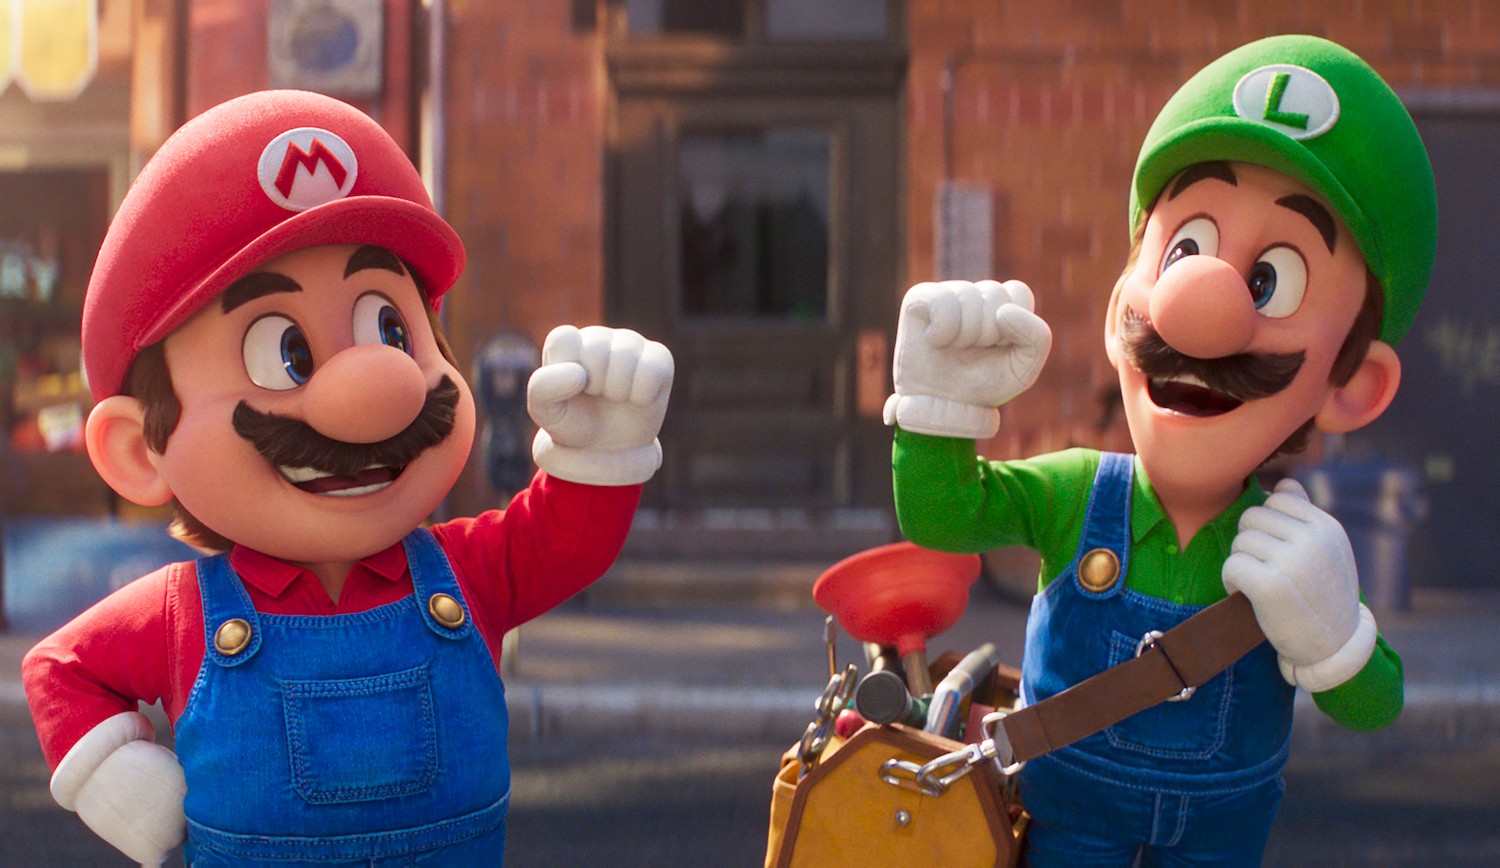 Chris Pratt voices Mario in the Super Mario Bros. movie.